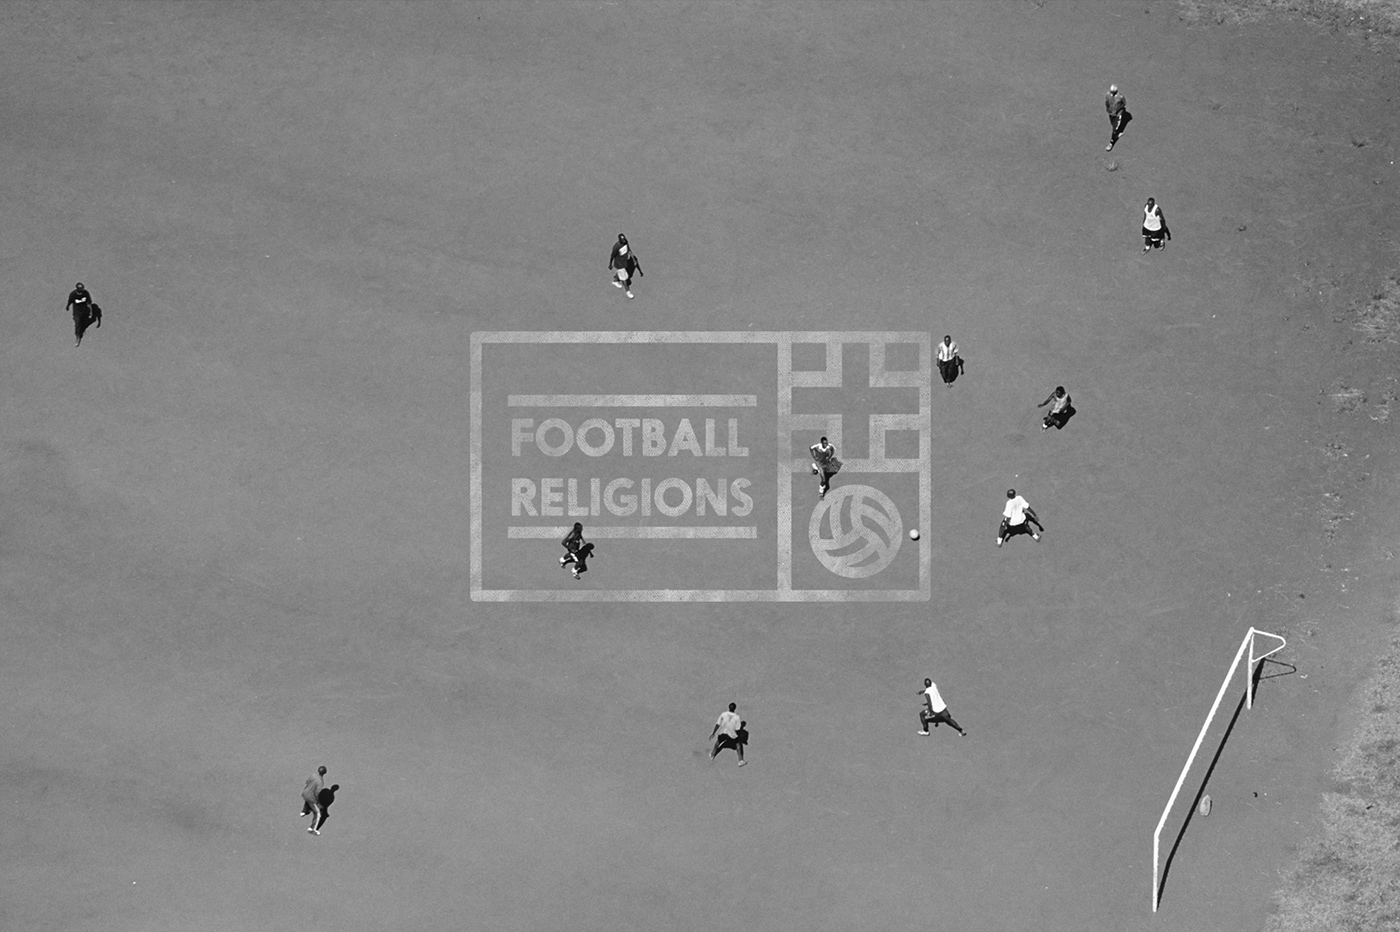 football Jerseys soccer kits Futbol religions uniform Soccer Kit Football kit concept logos